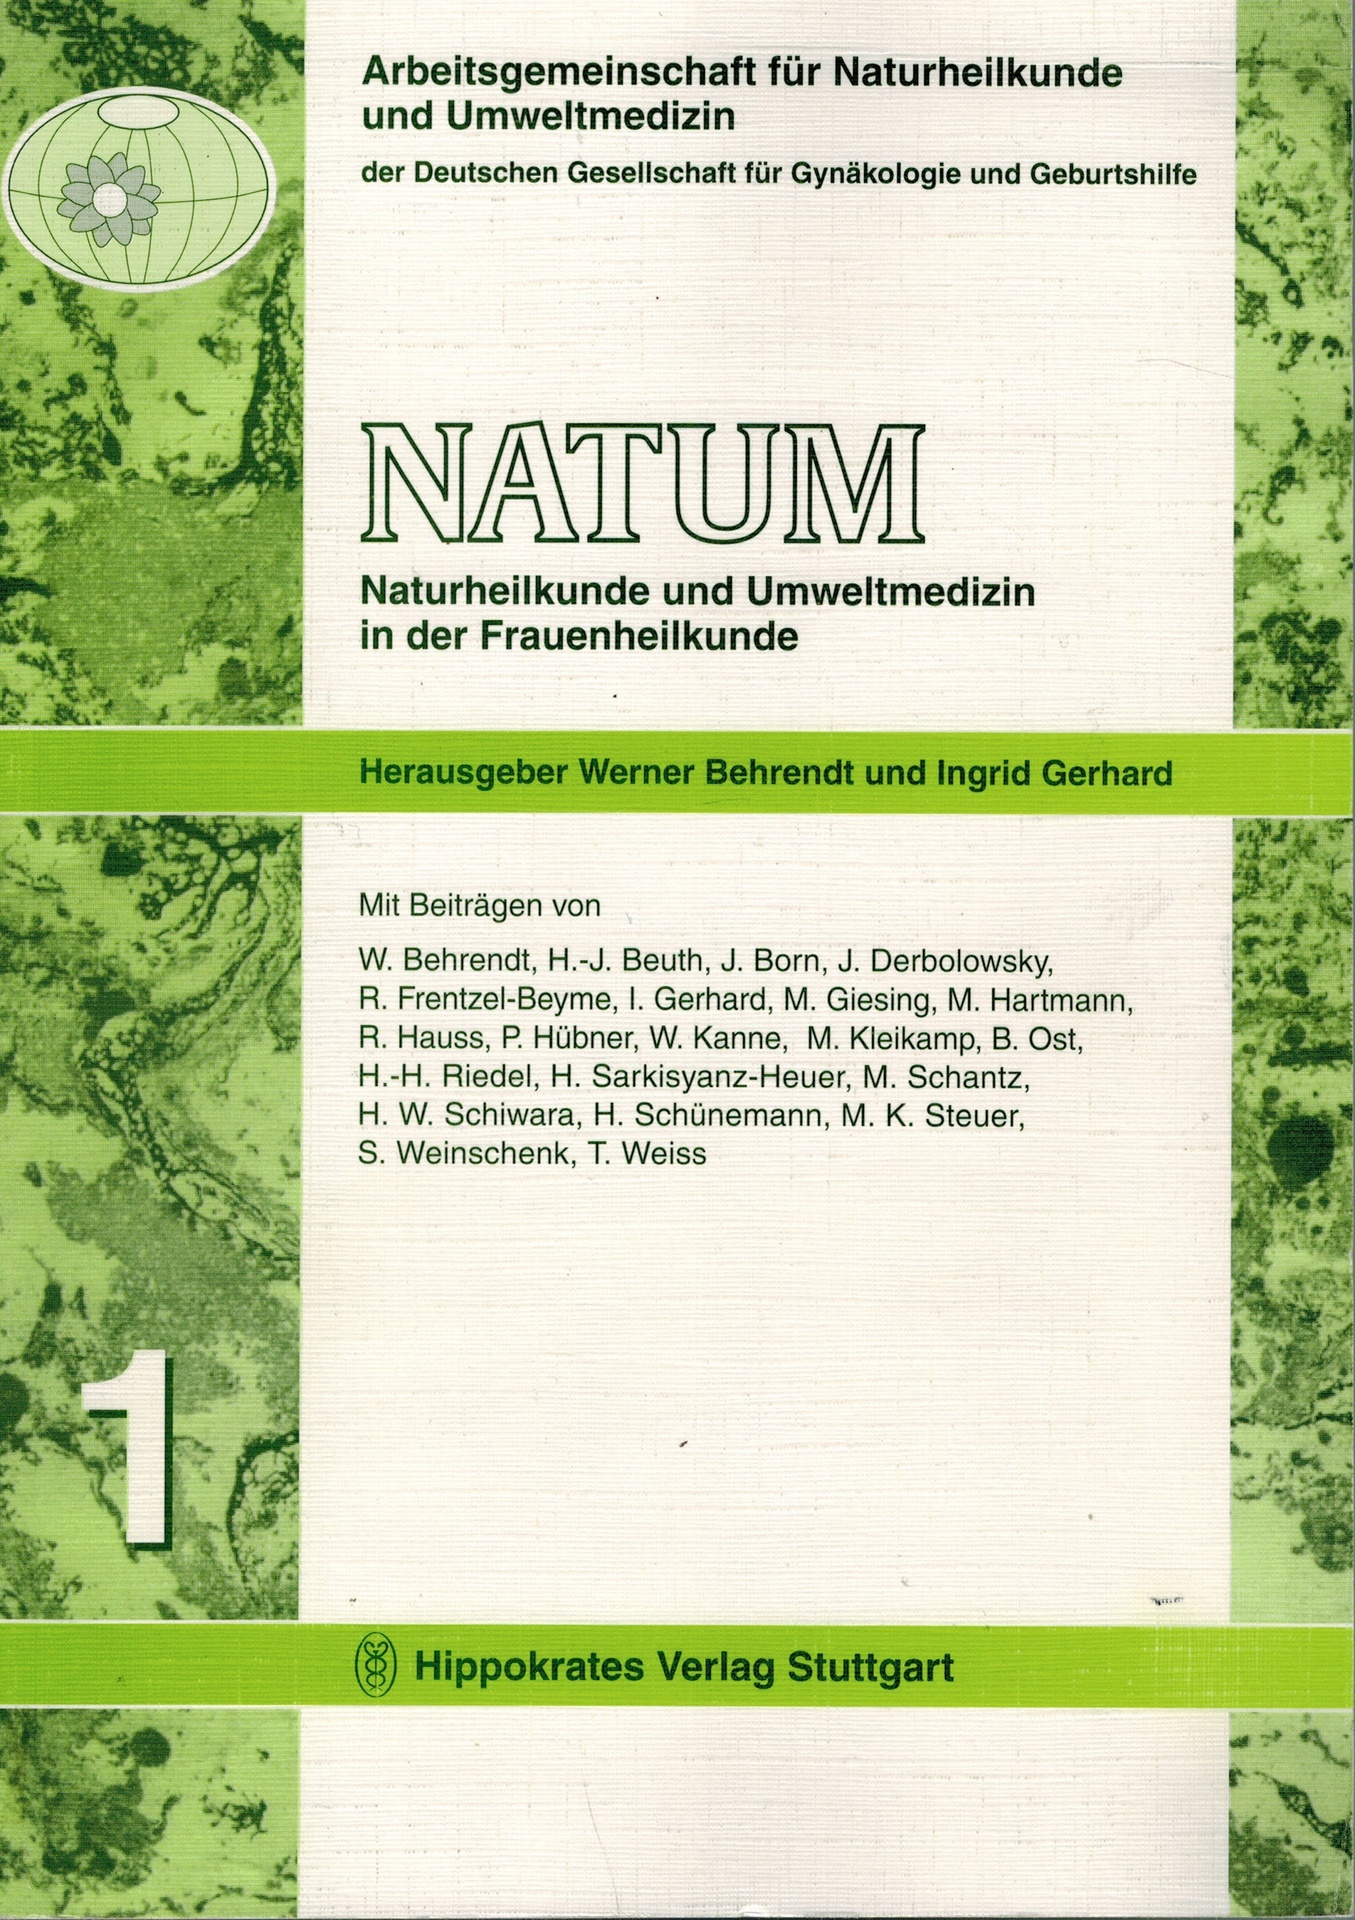 Natum - Naturheilkunde und Umweltmedizin in der Frauenheilkunde. Band 1. - Behrendt, Werner; Beuth, Hans J; Born, Jörg